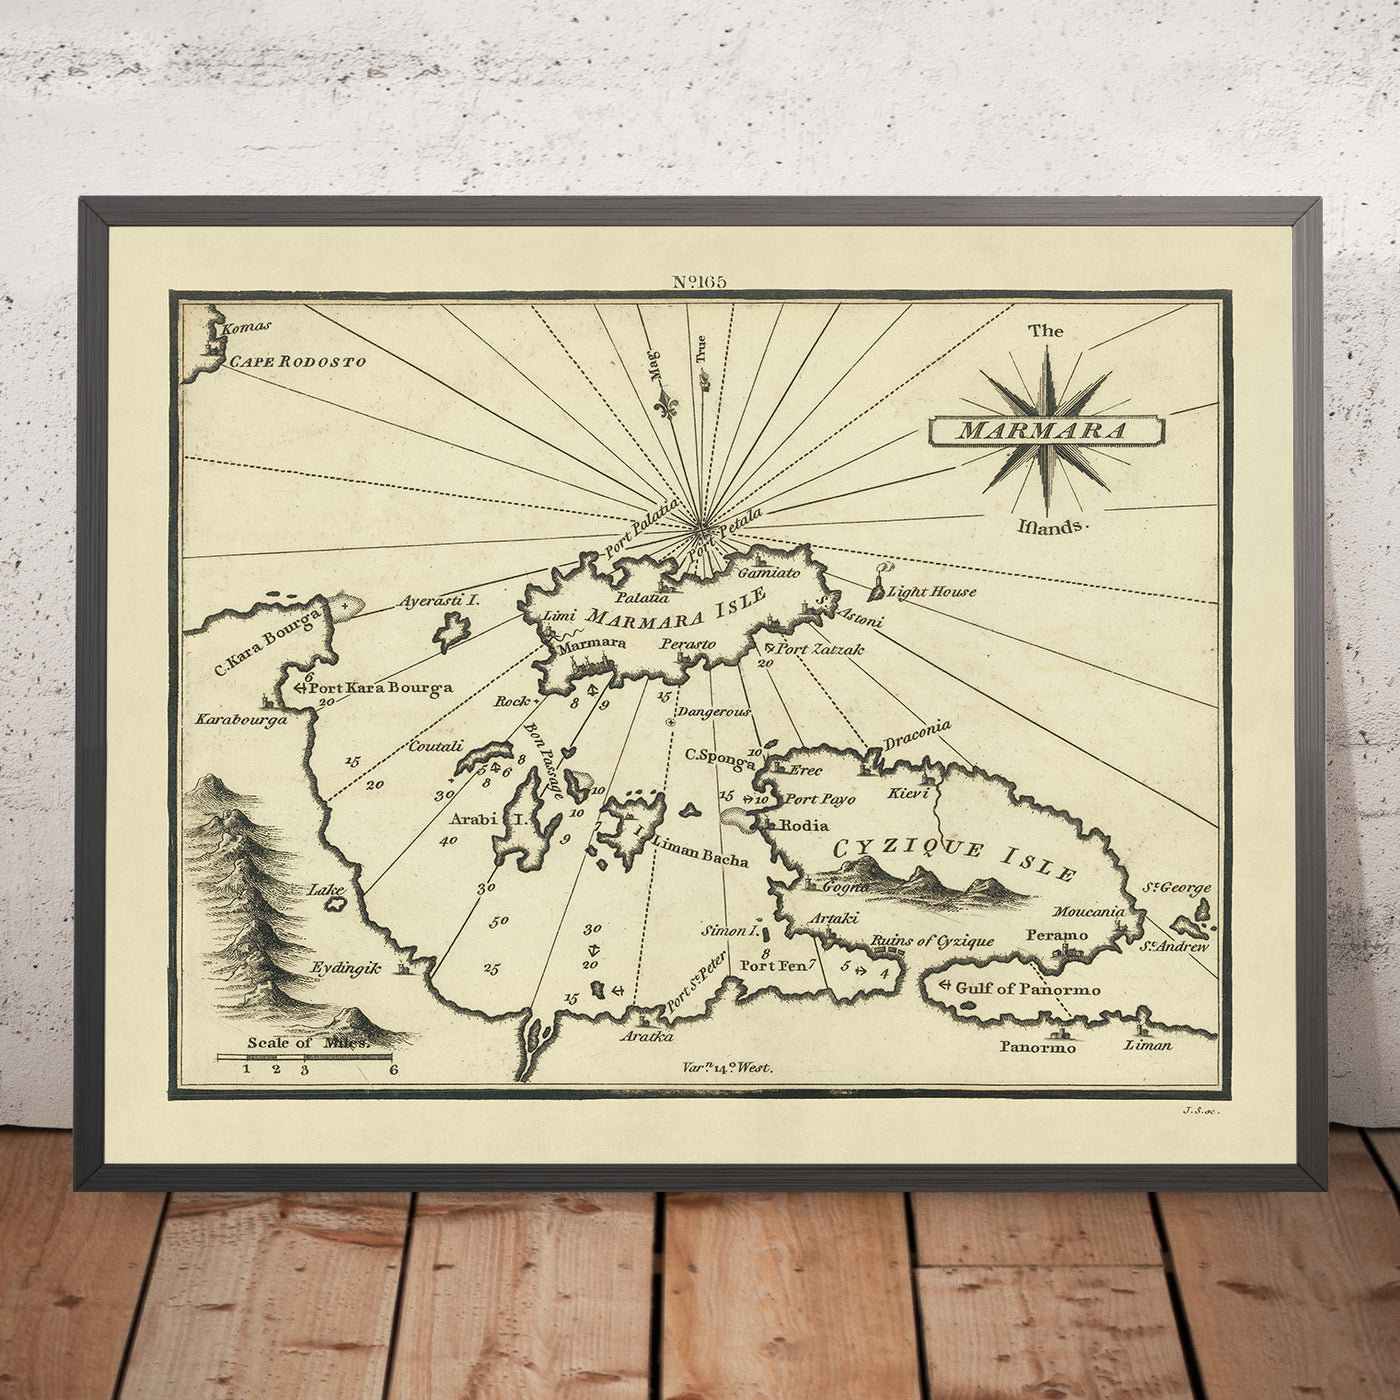 Alte Seekarte der Marmarainseln von Heather, 1802: Dardanellen, Bosporus, antikes Troja